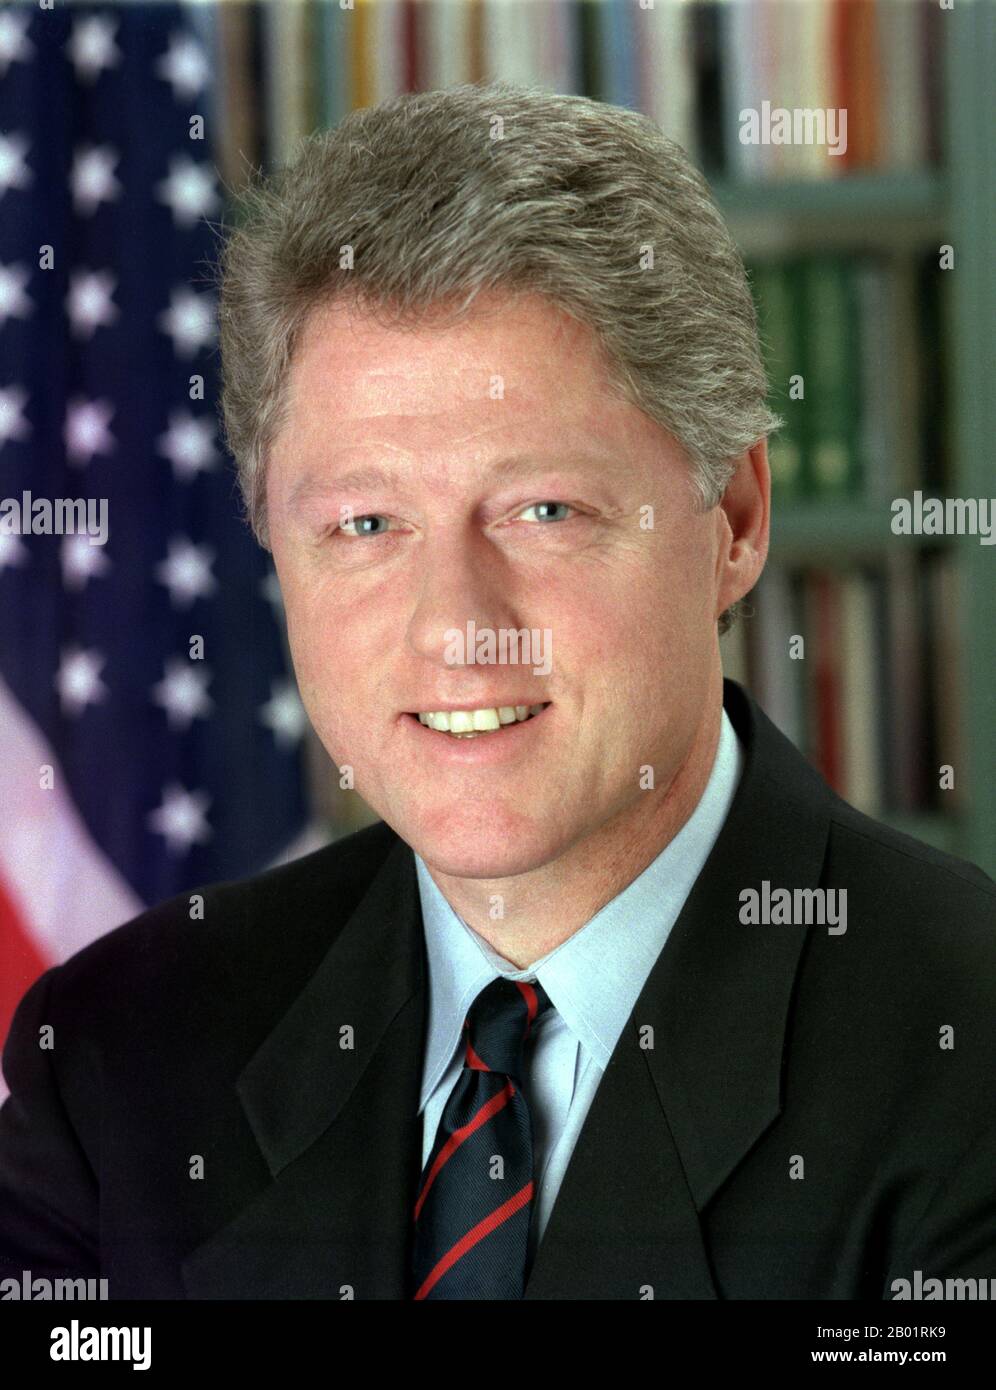 USA: William 'Bill' Clinton (* 19. August 1946), 42. Präsident der Vereinigten Staaten (* 1993–2001). Offizielles Porträt von Bob McNeely, 1. Januar 1993. William Jefferson Clinton (* William Jefferson Blythe III.) ist ein US-amerikanischer Politiker, der von 1993 bis 2001 42. Präsident der Vereinigten Staaten war. Er wurde mit 46 Jahren eröffnet und war der drittjüngste Präsident. Er übernahm sein Amt am Ende des Kalten Krieges und war der erste Präsident der Baby-Boomer-Generation. Clinton wurde als neuer Demokrat beschrieben. Viele seiner Politiken wurden einer zentristischen Philosophie des Dritten Weges zugeschrieben. Stockfoto